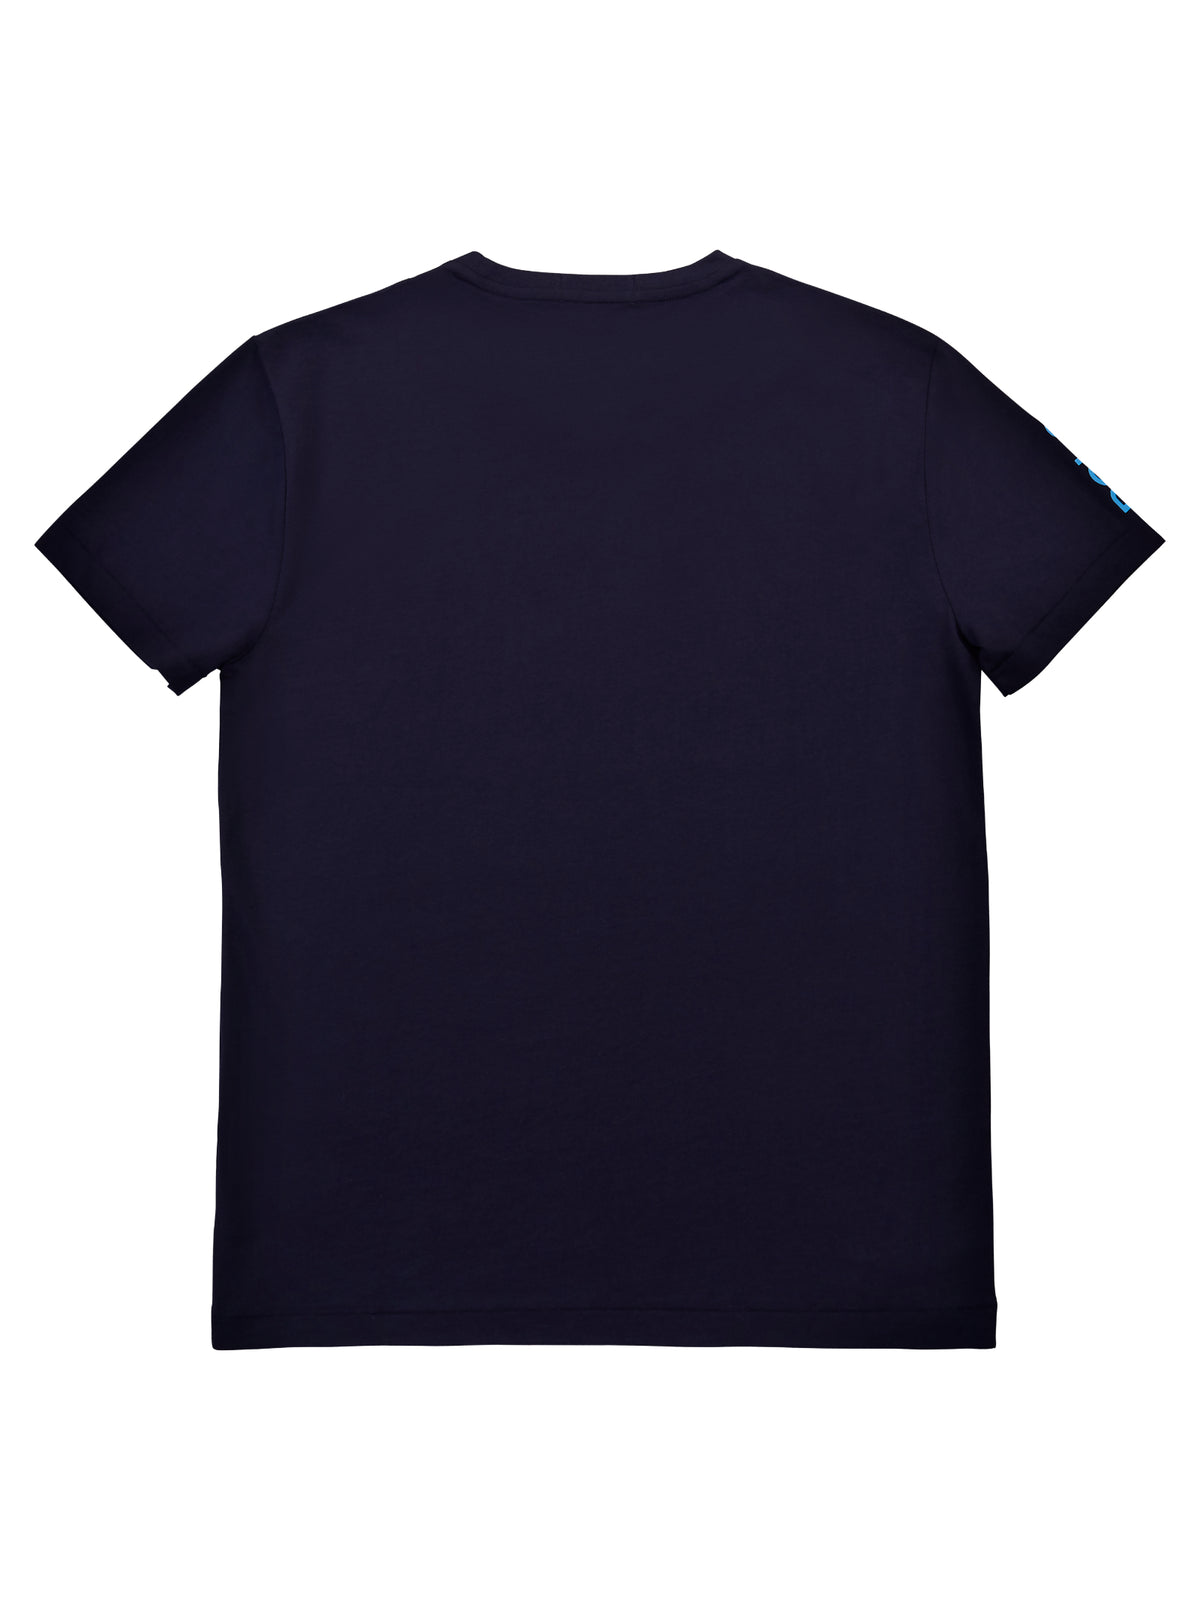 Australian Open Graphic T-Shirt in Navy